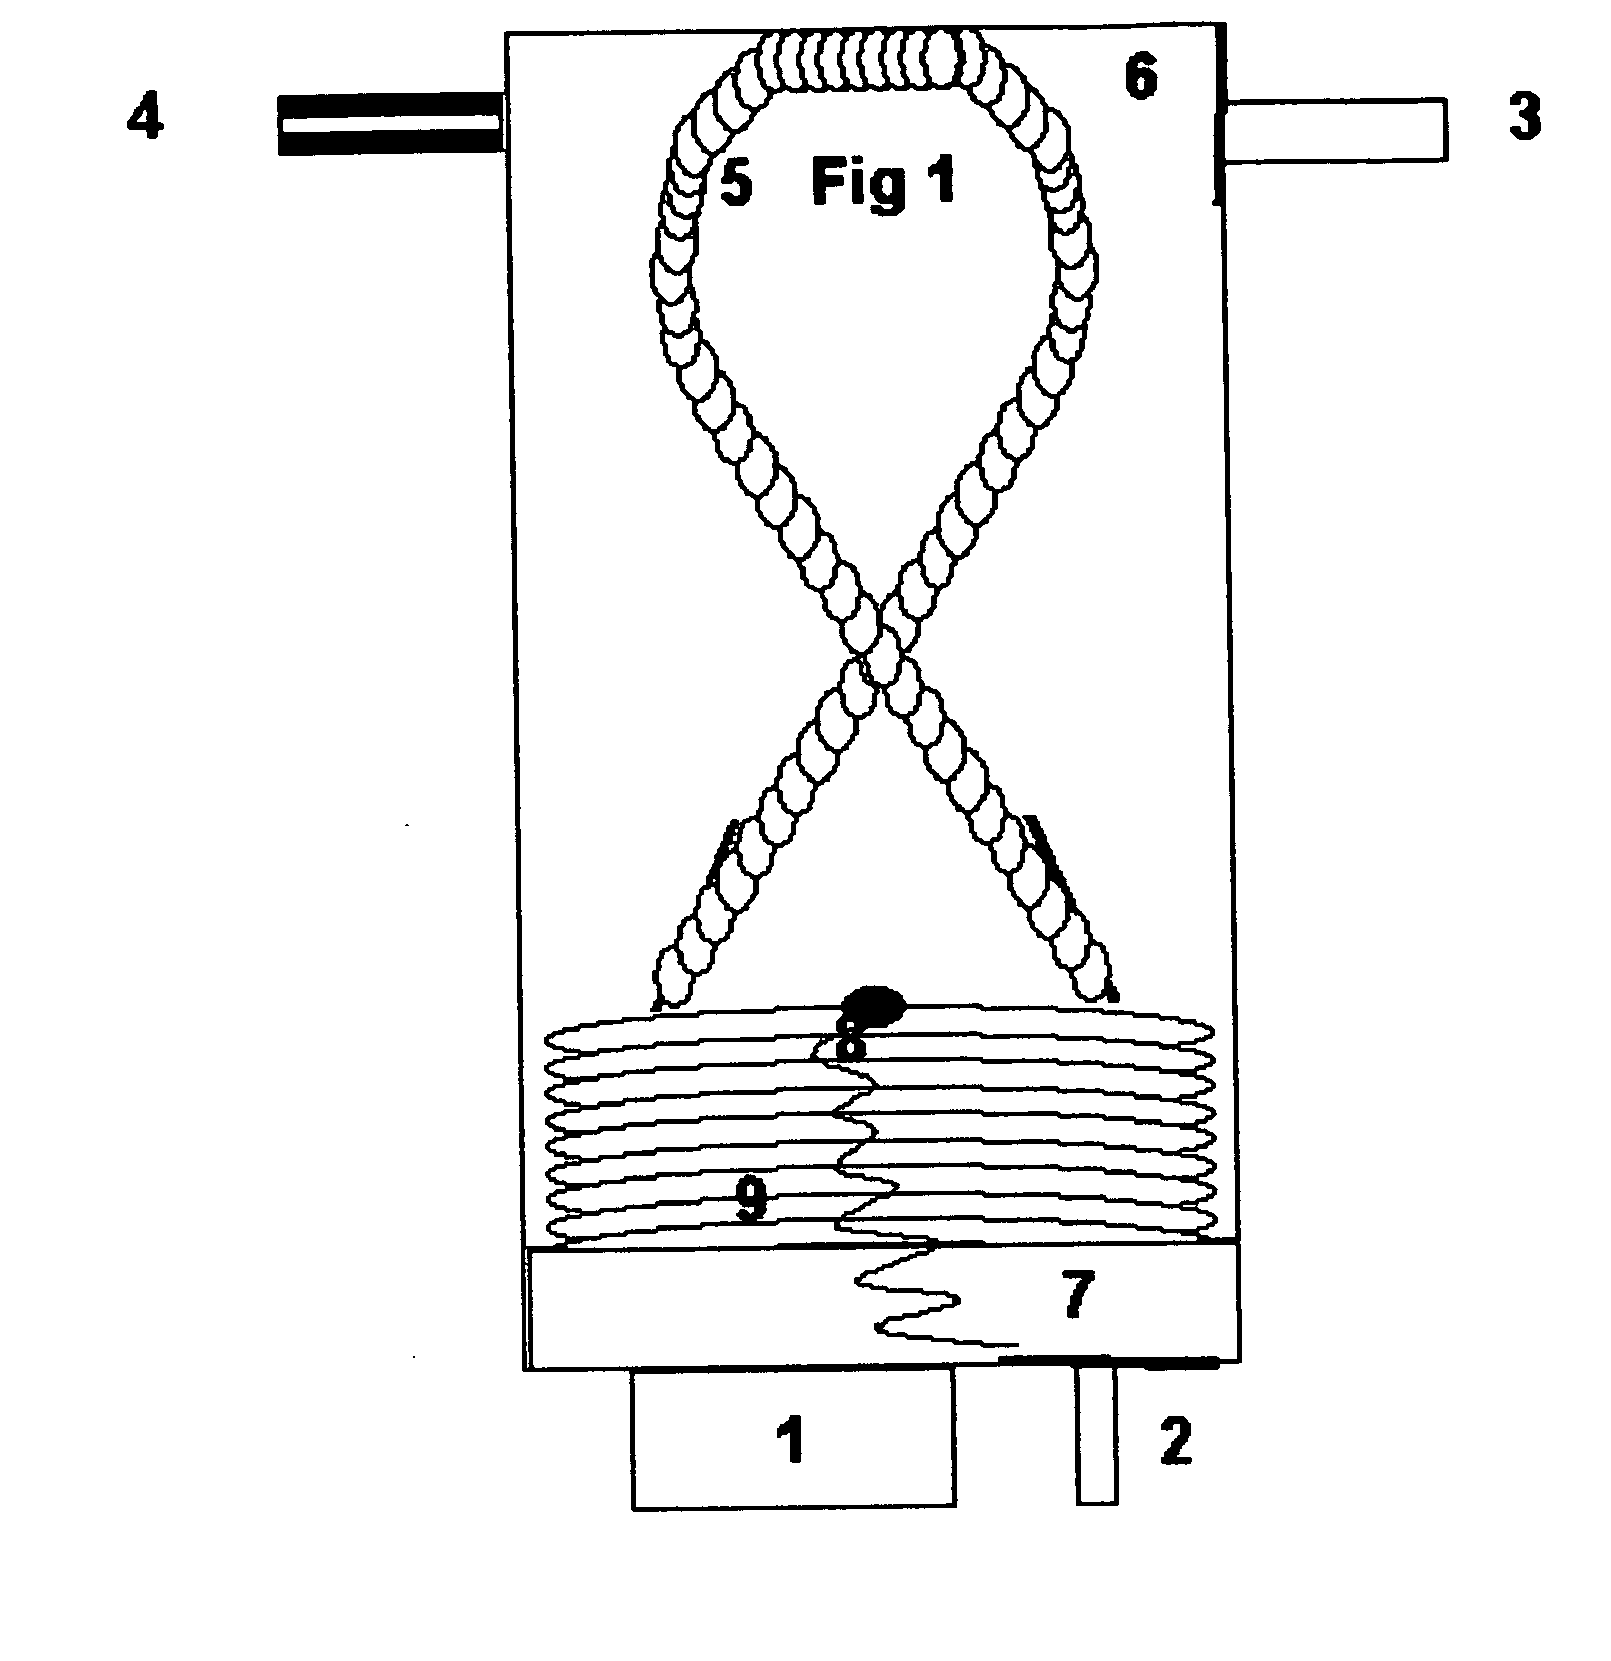 Ventilator safety valve